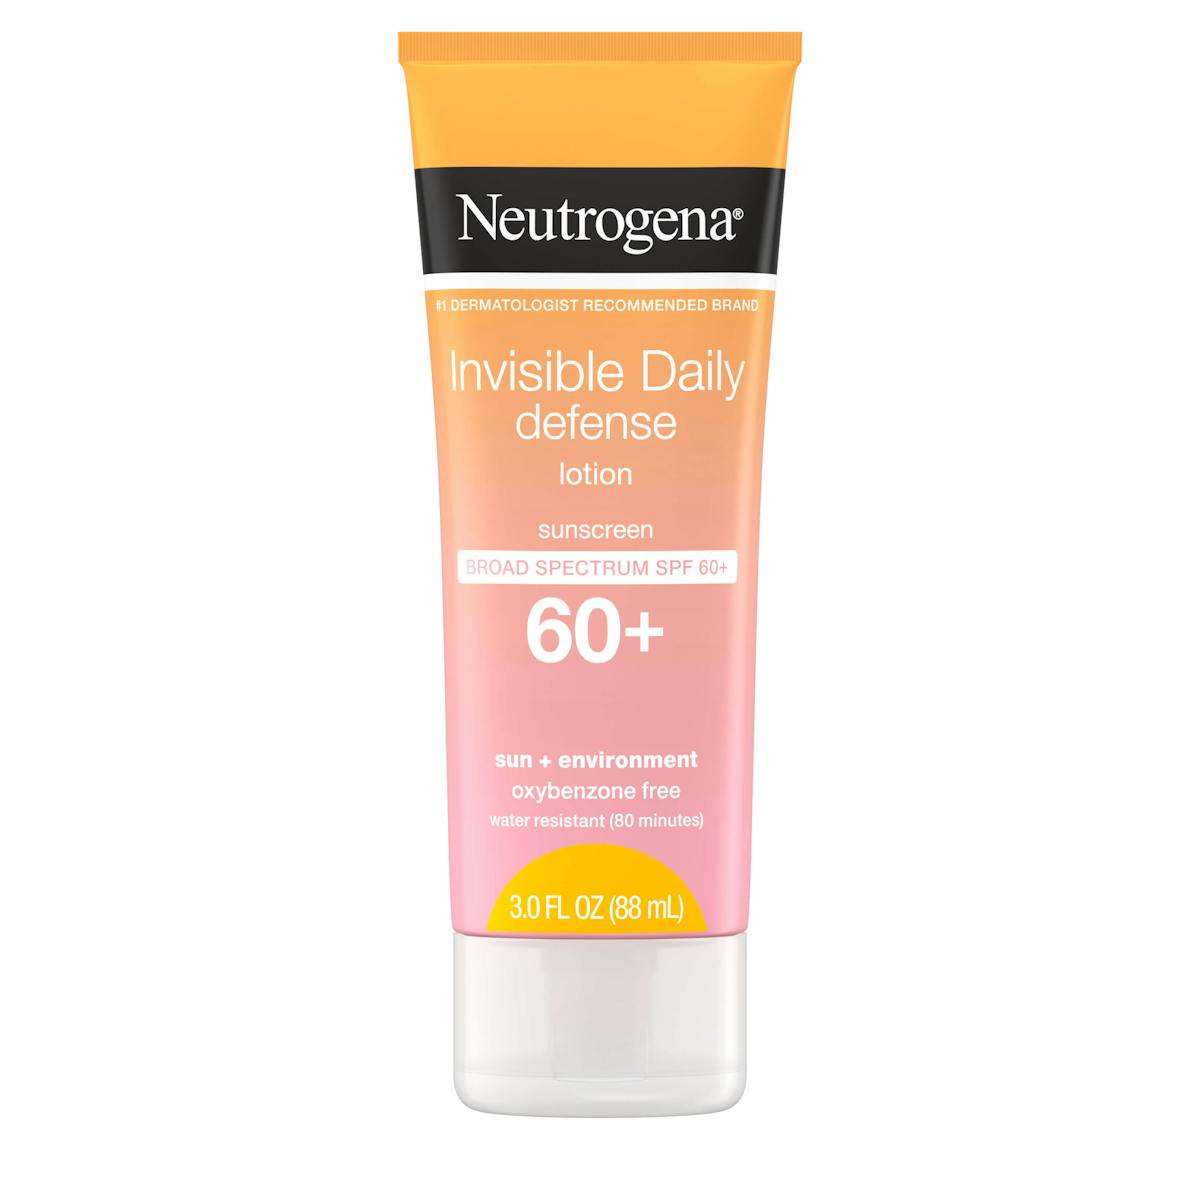 Invisible Daily Defense Non-Comedogenic Sunscreen Lotion SPF 60 